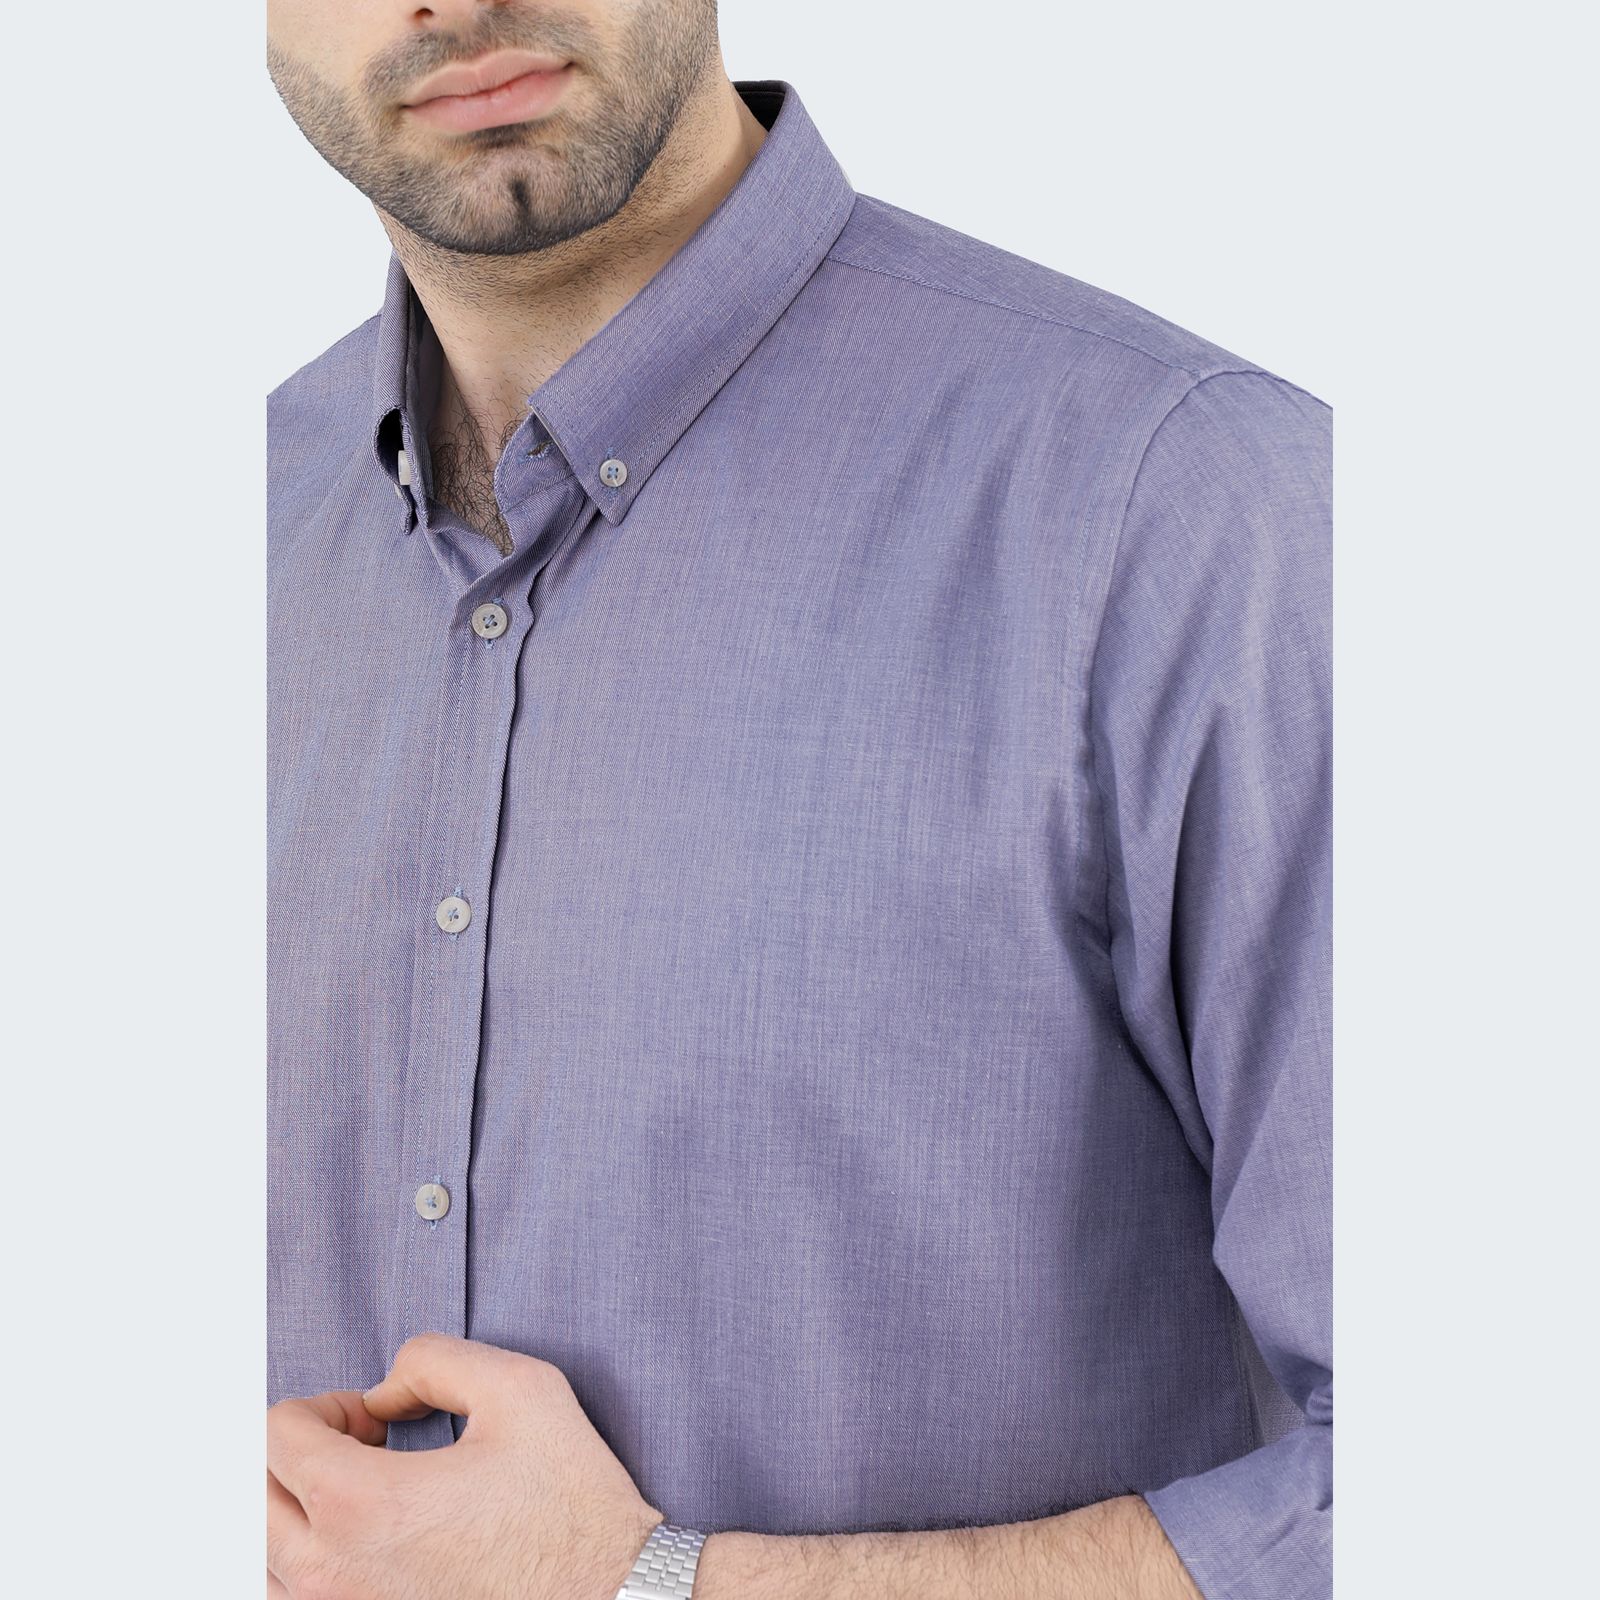 پیراهن آستین بلند مردانه پاتن جامه مدل تترون 102821020284312  -  - 5